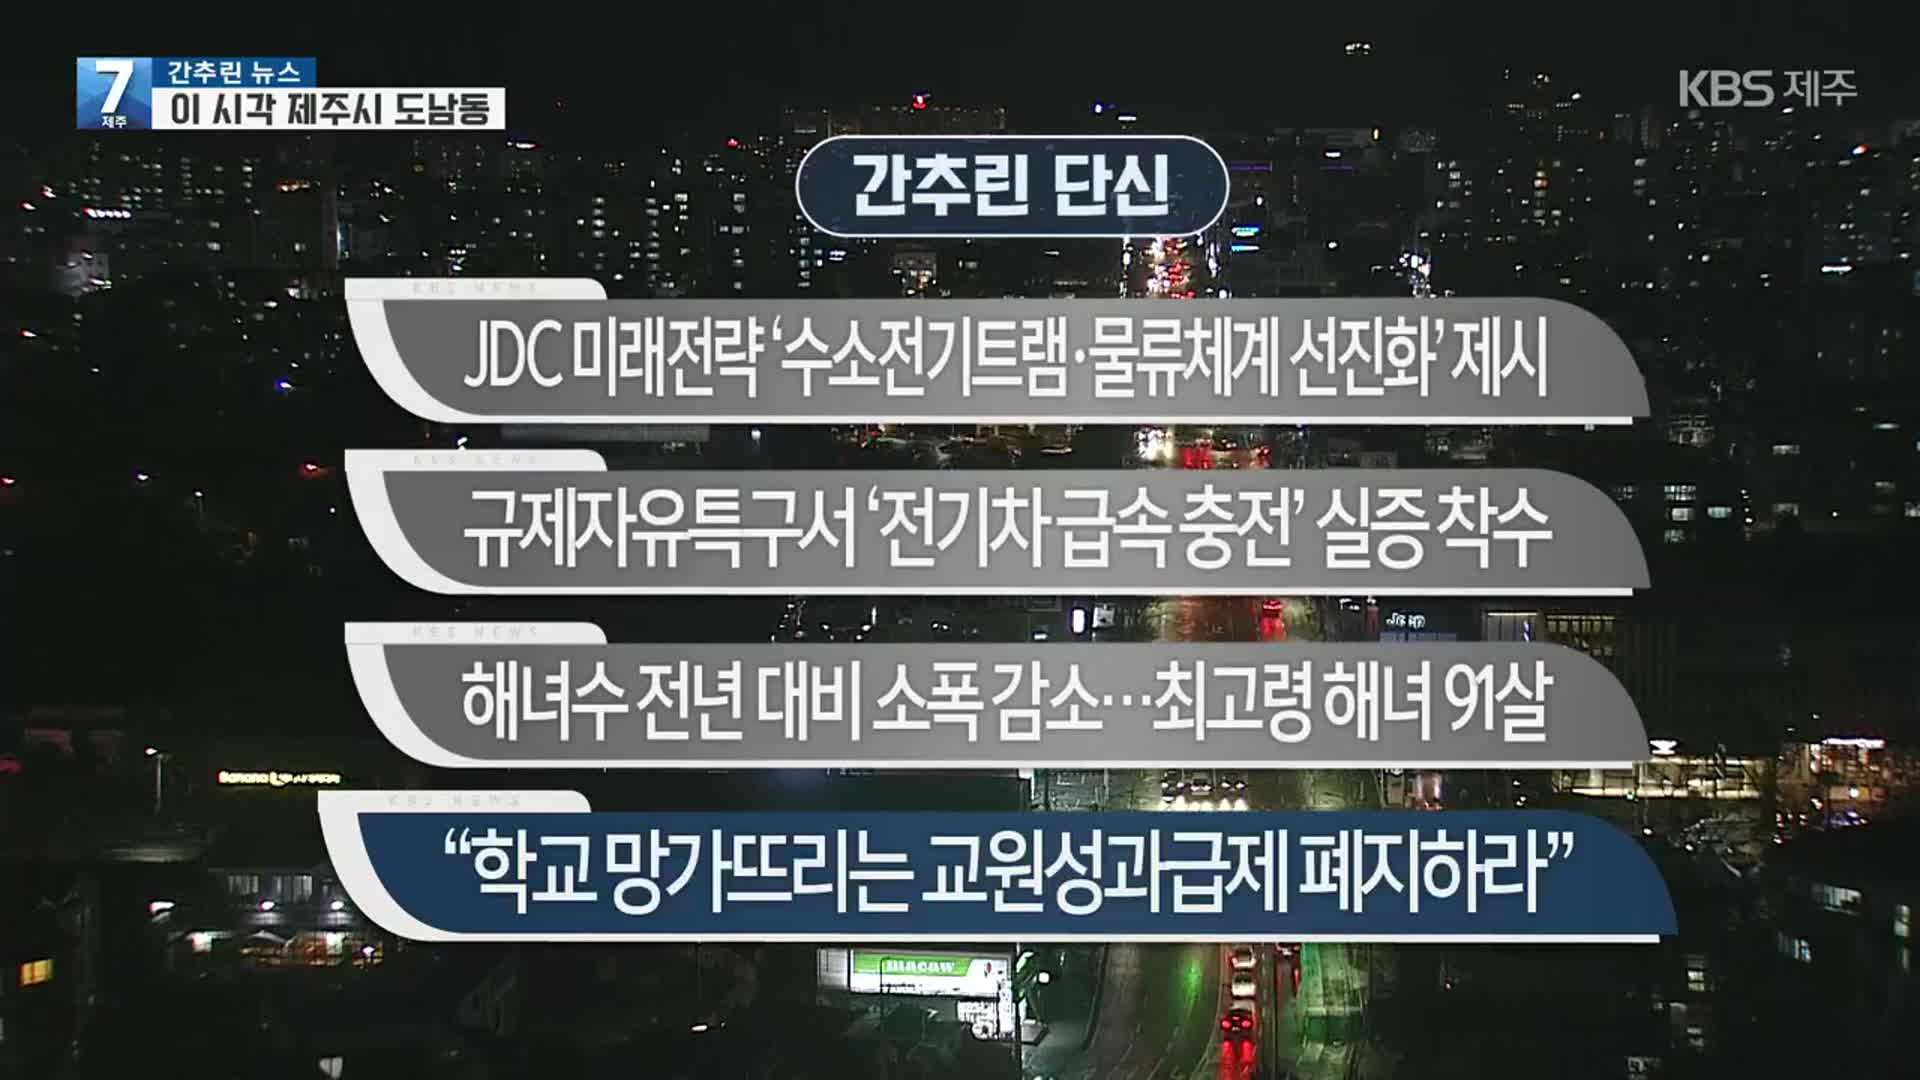 [간추린뉴스] JDC 미래전략 ‘수소전기트램·물류체계 선진화’ 제시 외